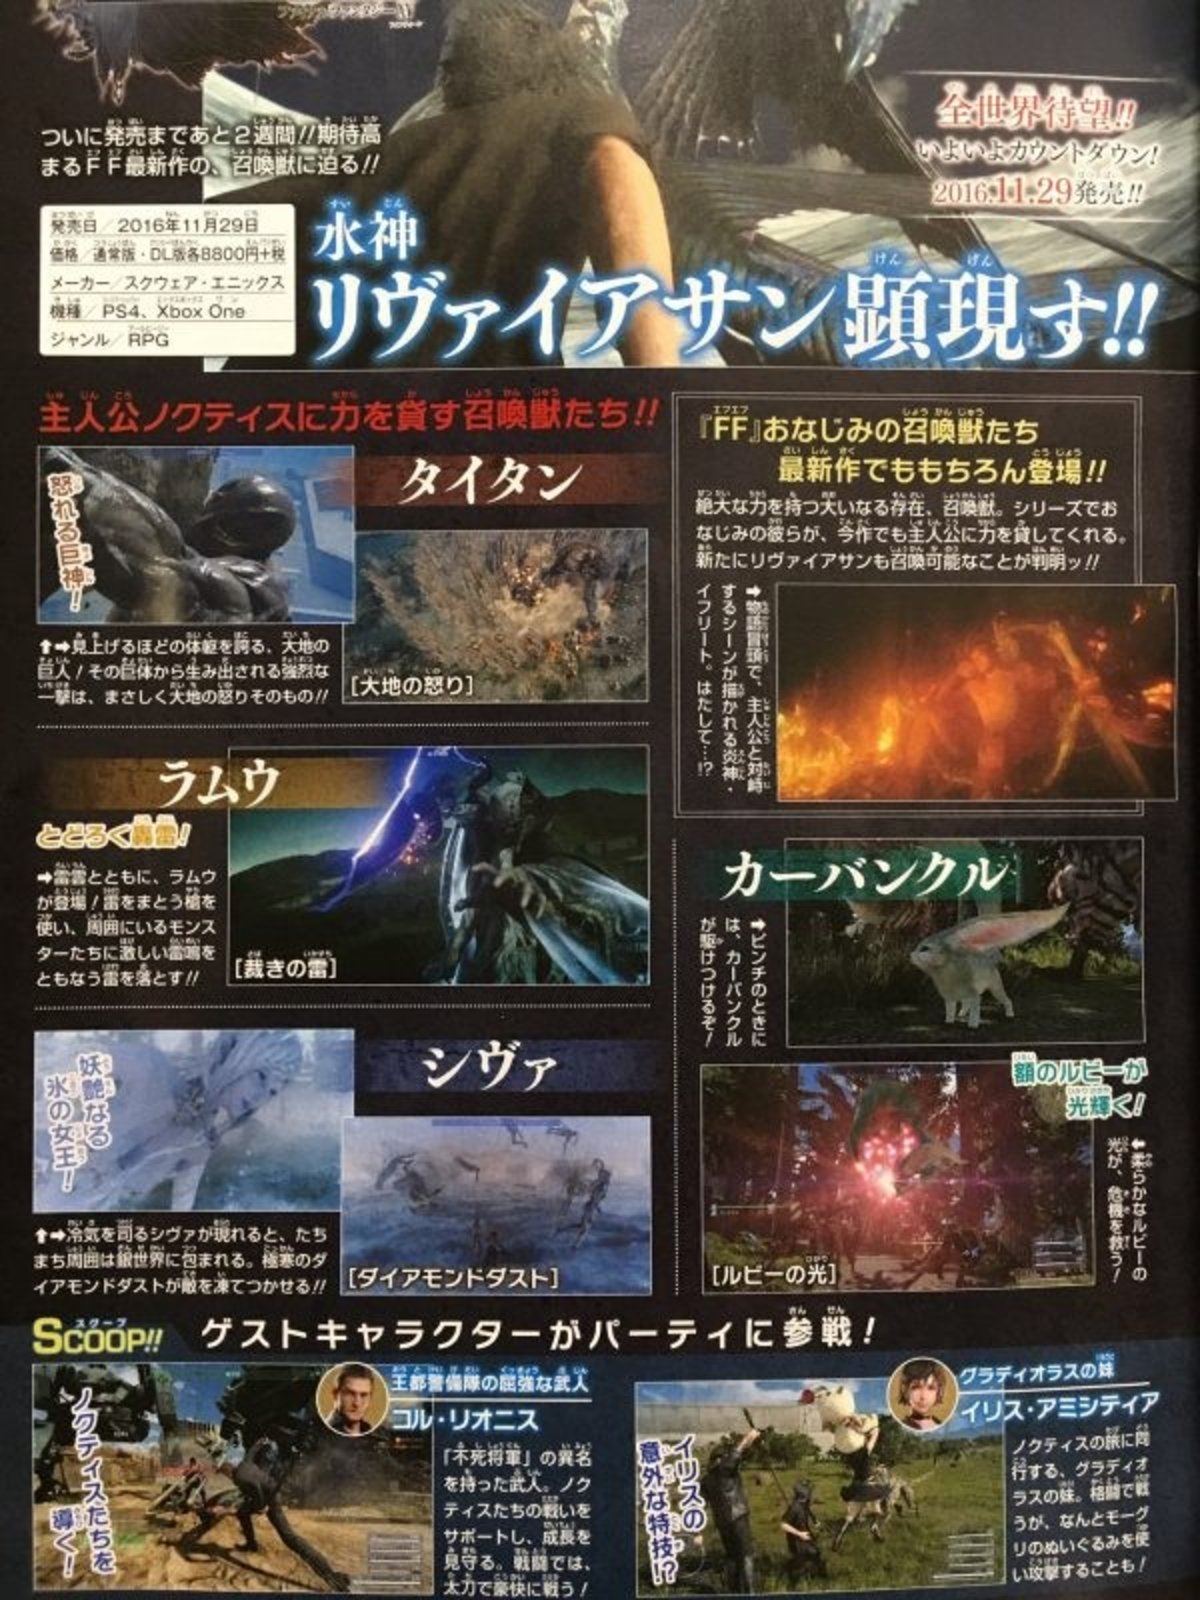 Final Fantasy XV revela dos nuevos personajes jugables temporales